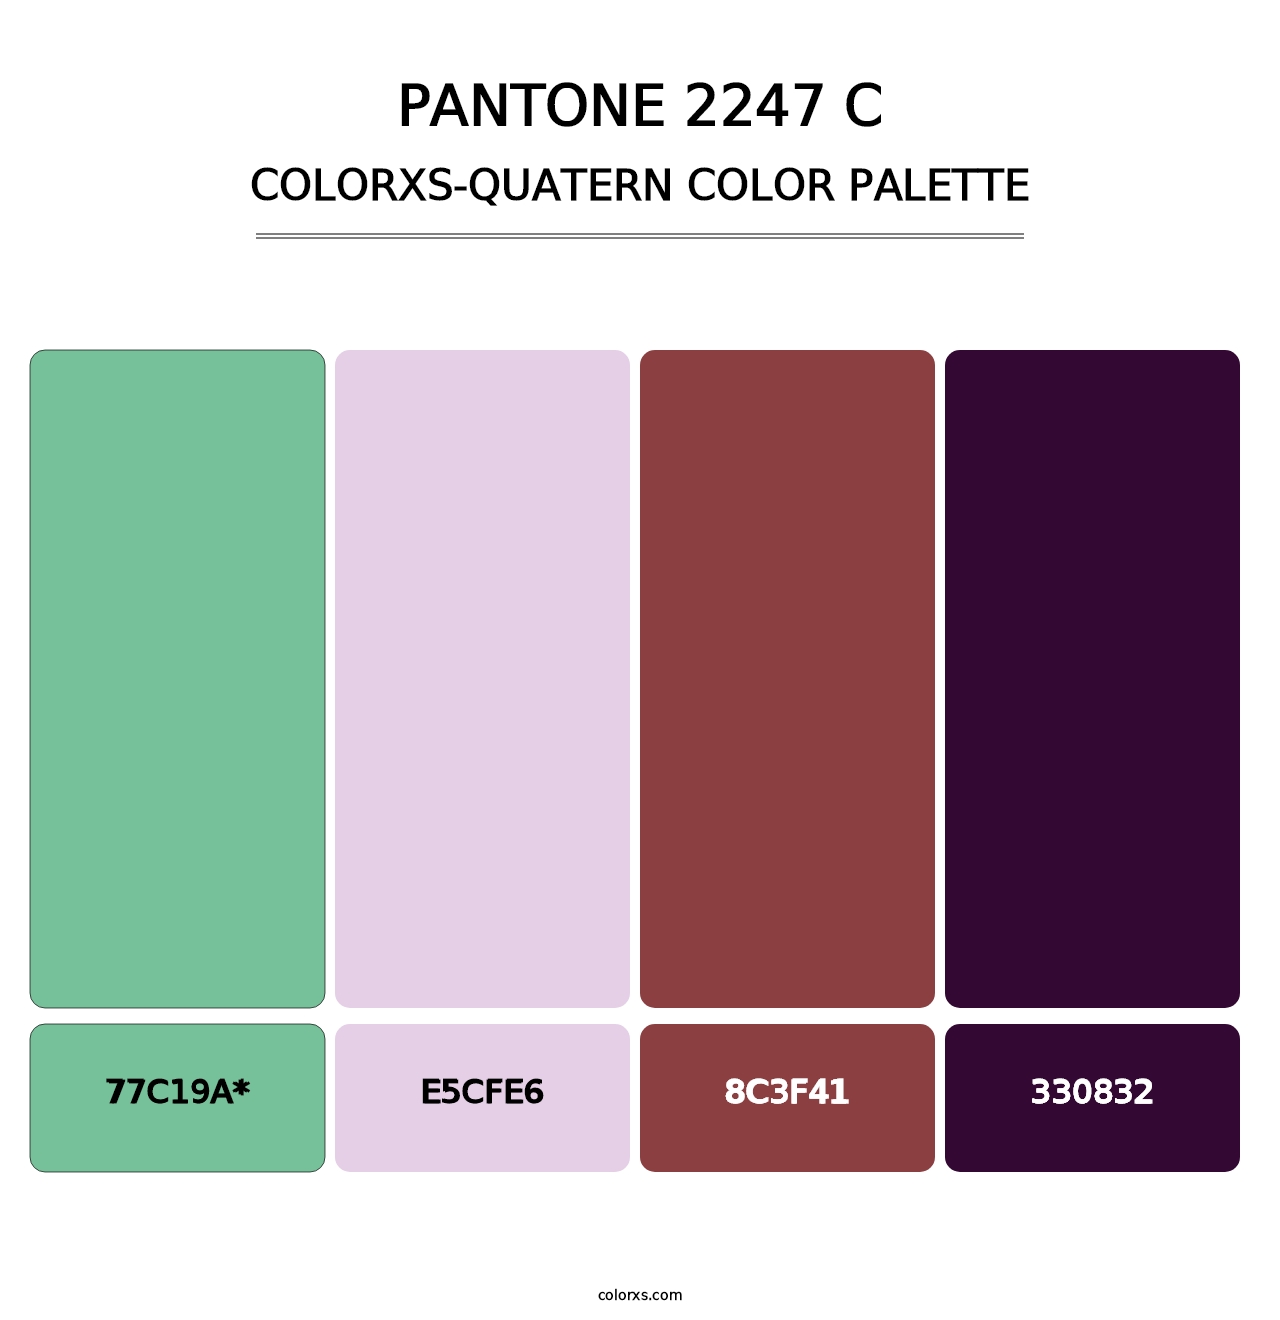 PANTONE 2247 C - Colorxs Quatern Palette